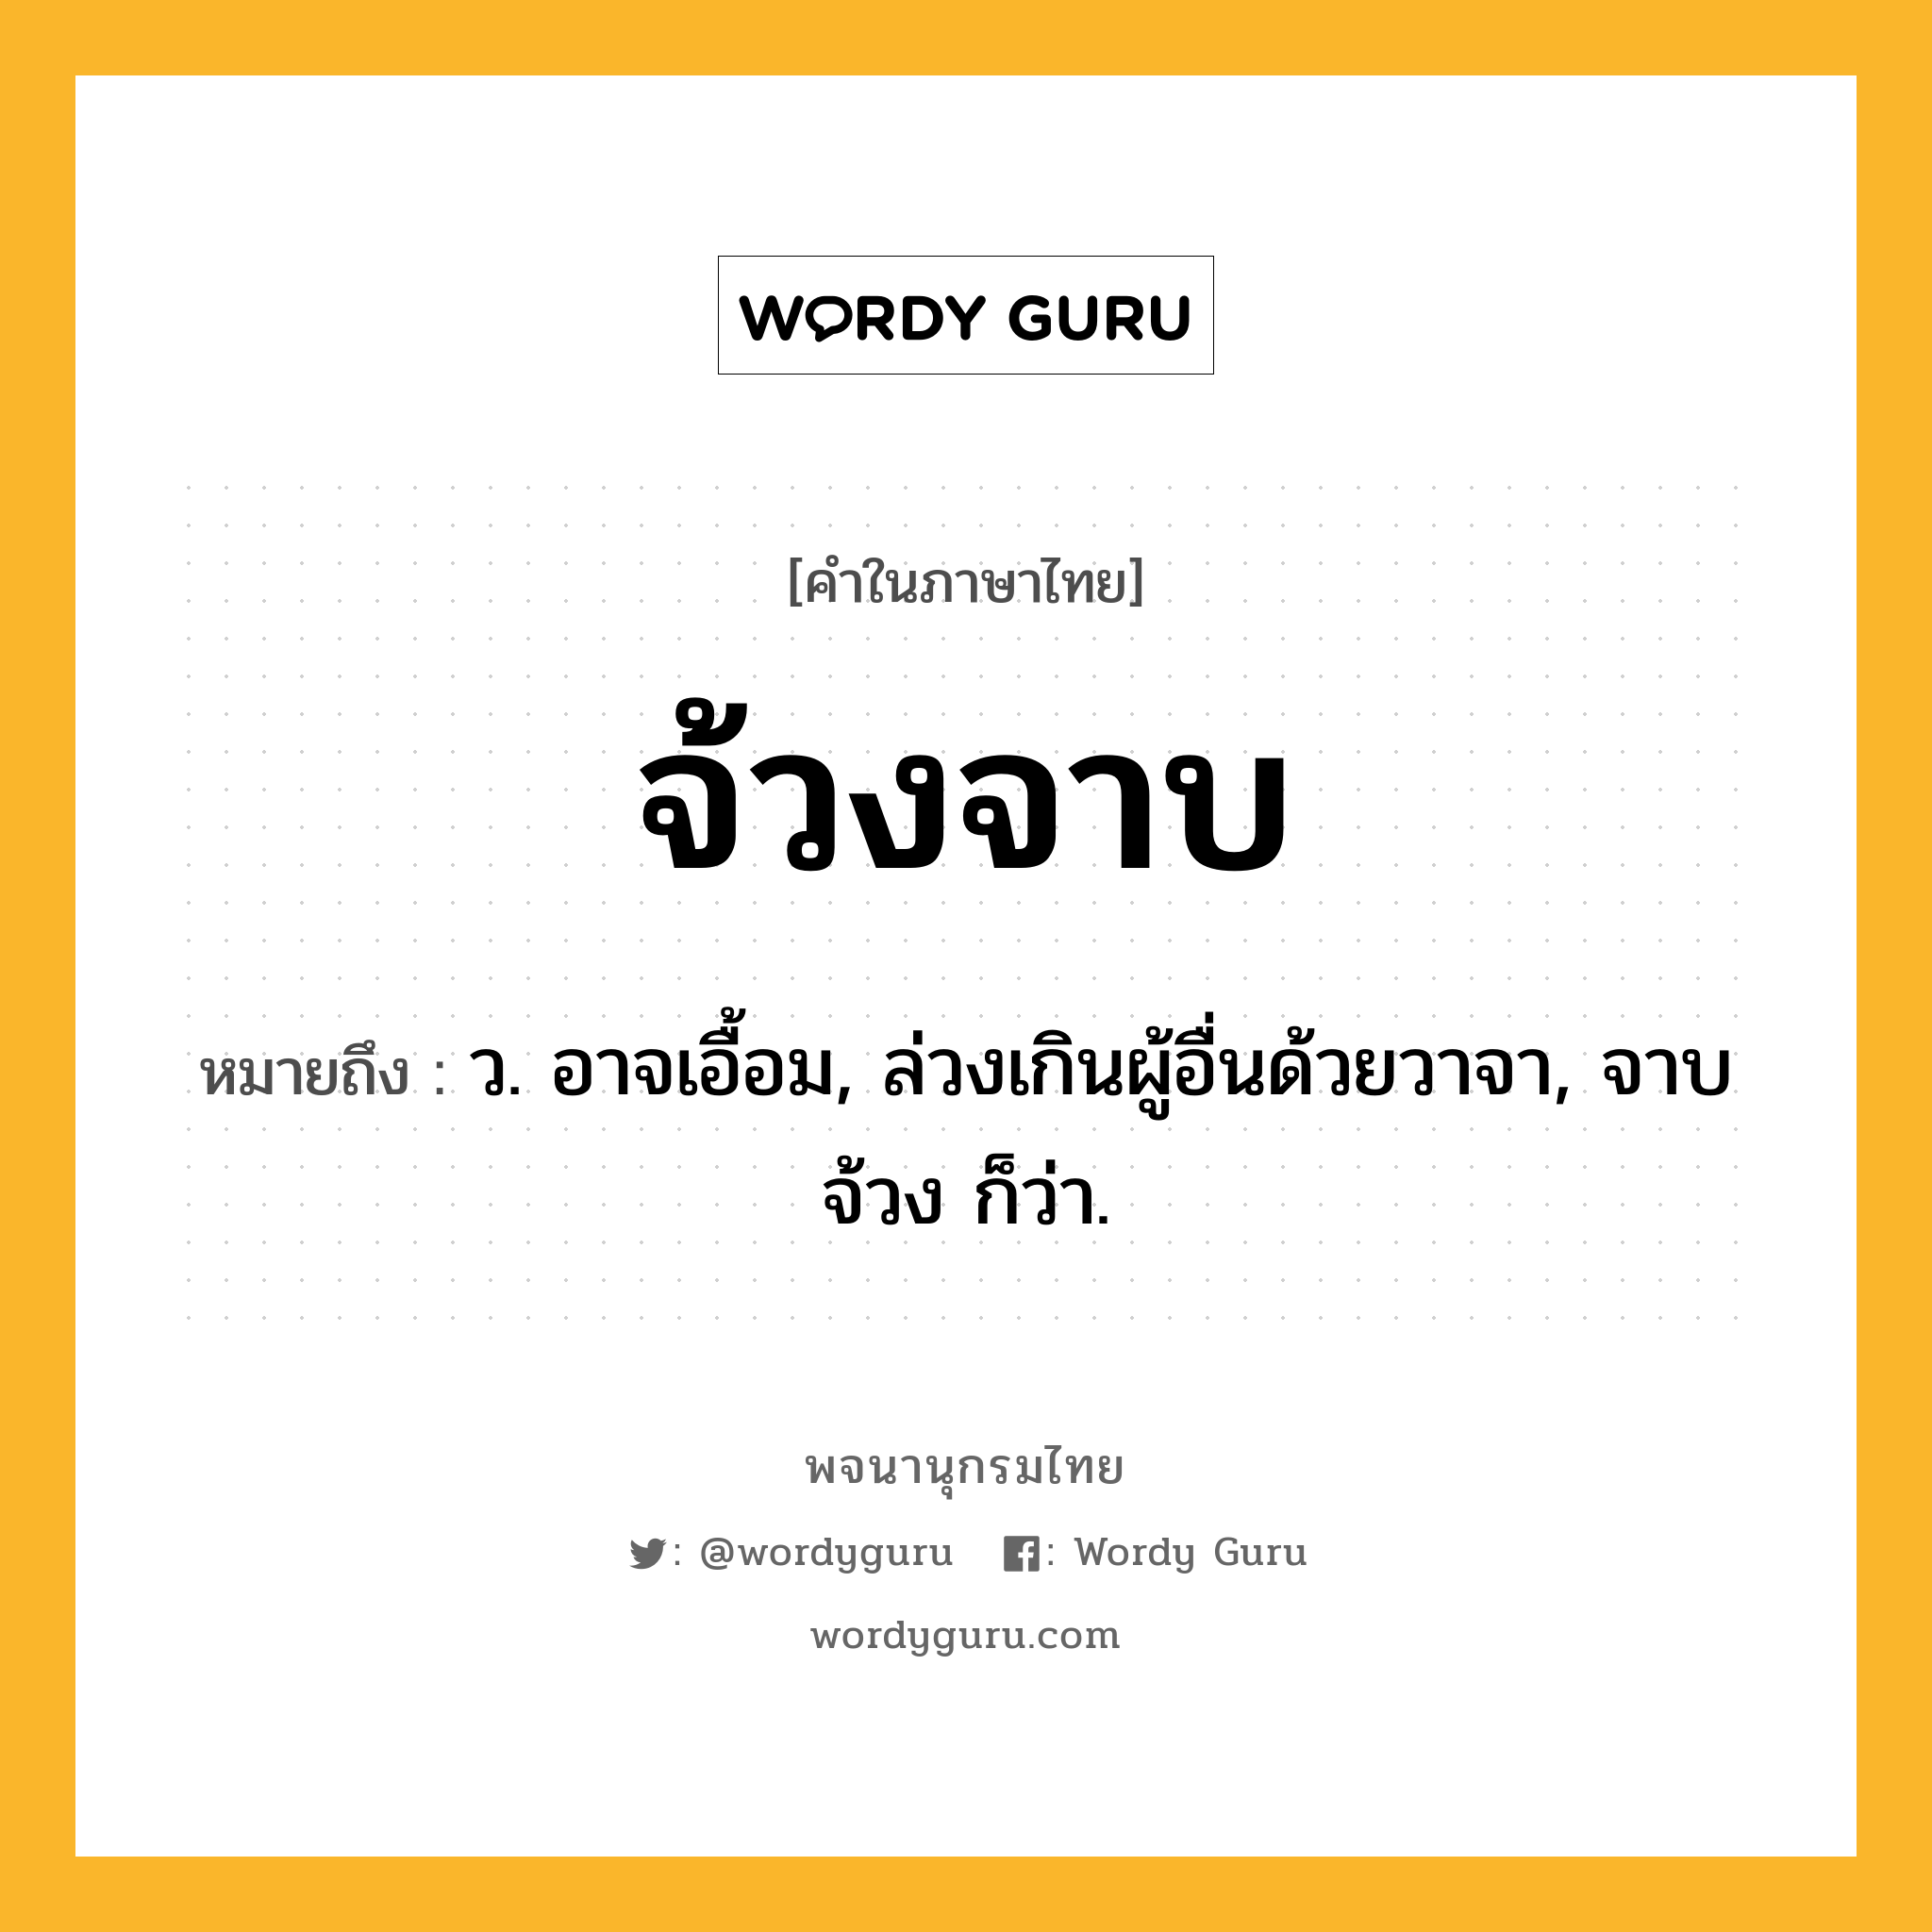 จ้วงจาบ หมายถึงอะไร?, คำในภาษาไทย จ้วงจาบ หมายถึง ว. อาจเอื้อม, ล่วงเกินผู้อื่นด้วยวาจา, จาบจ้วง ก็ว่า.